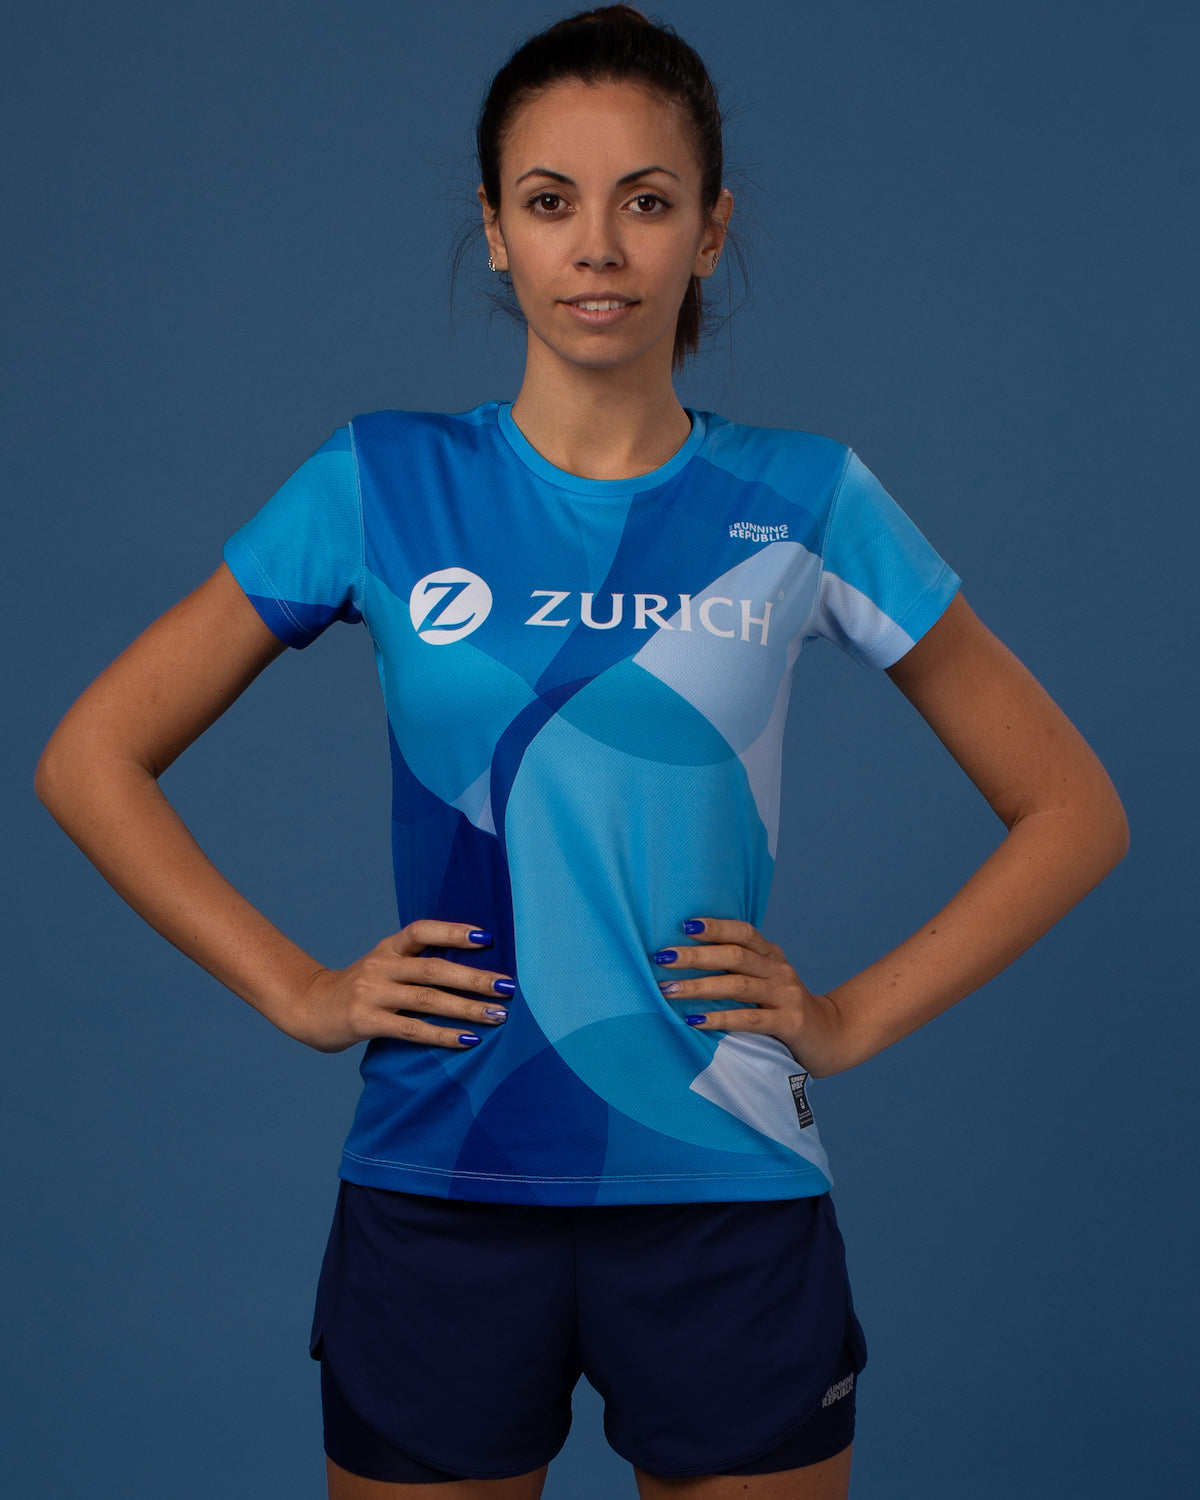 Camiseta Zurich Insurance Marathons women's performance